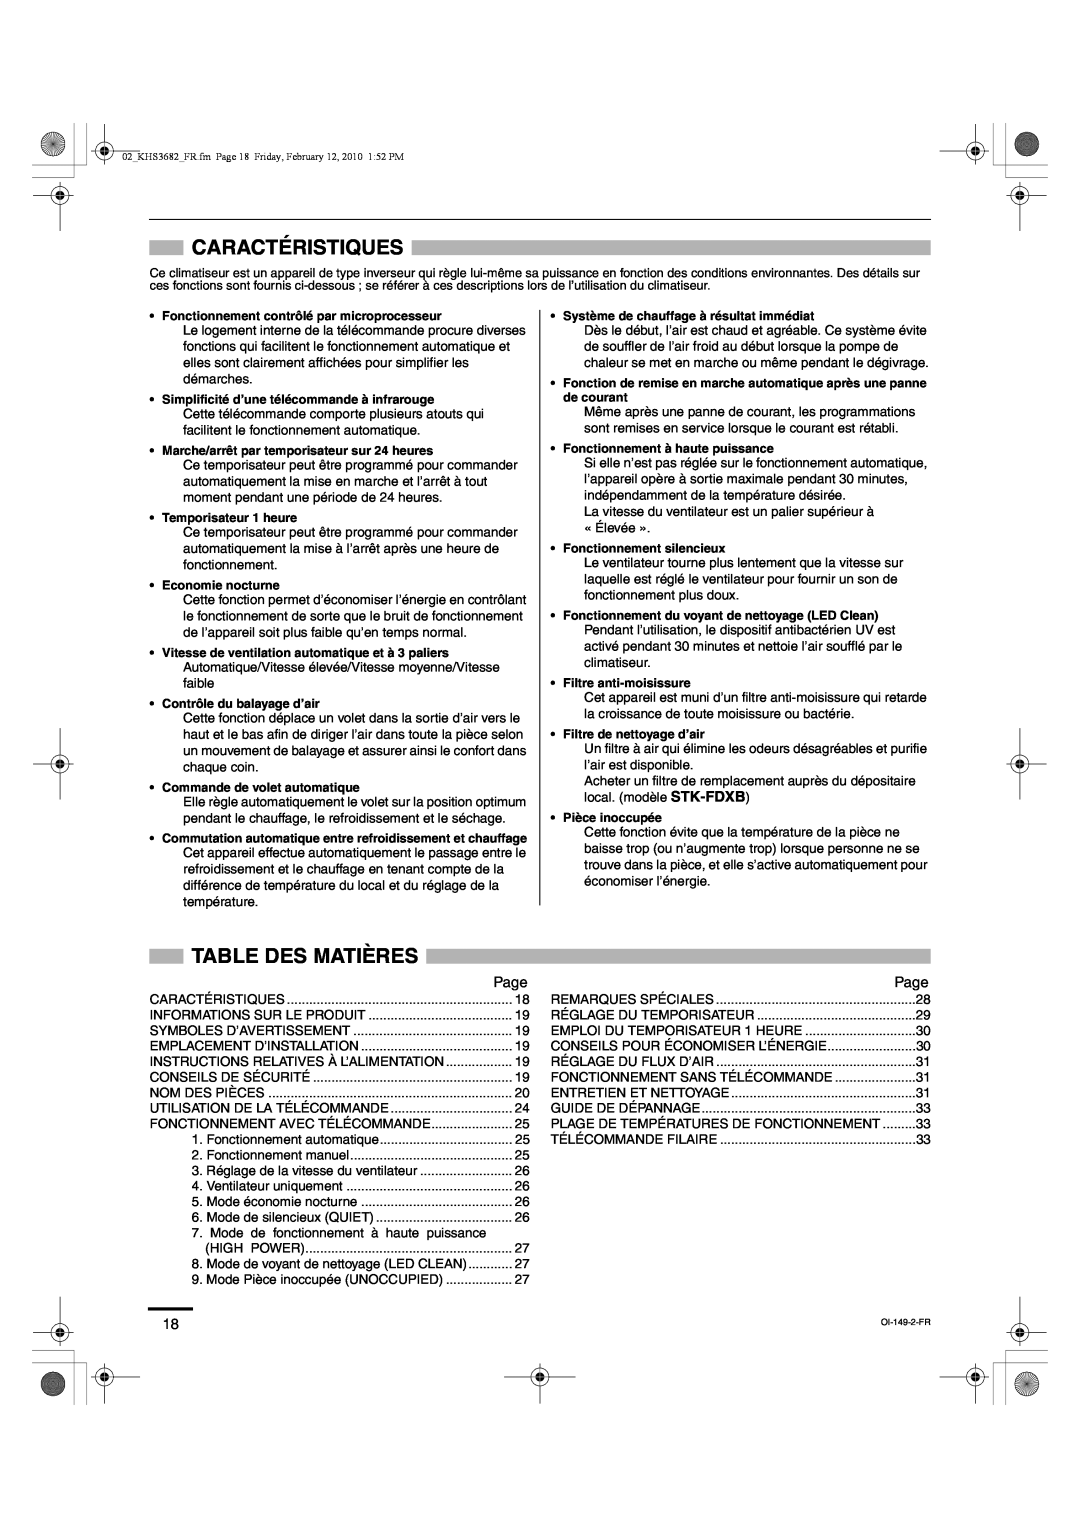 Sanyo KHS3682, KHS3082 instruction manual Caractéristiques, Table Des Matières, Page 